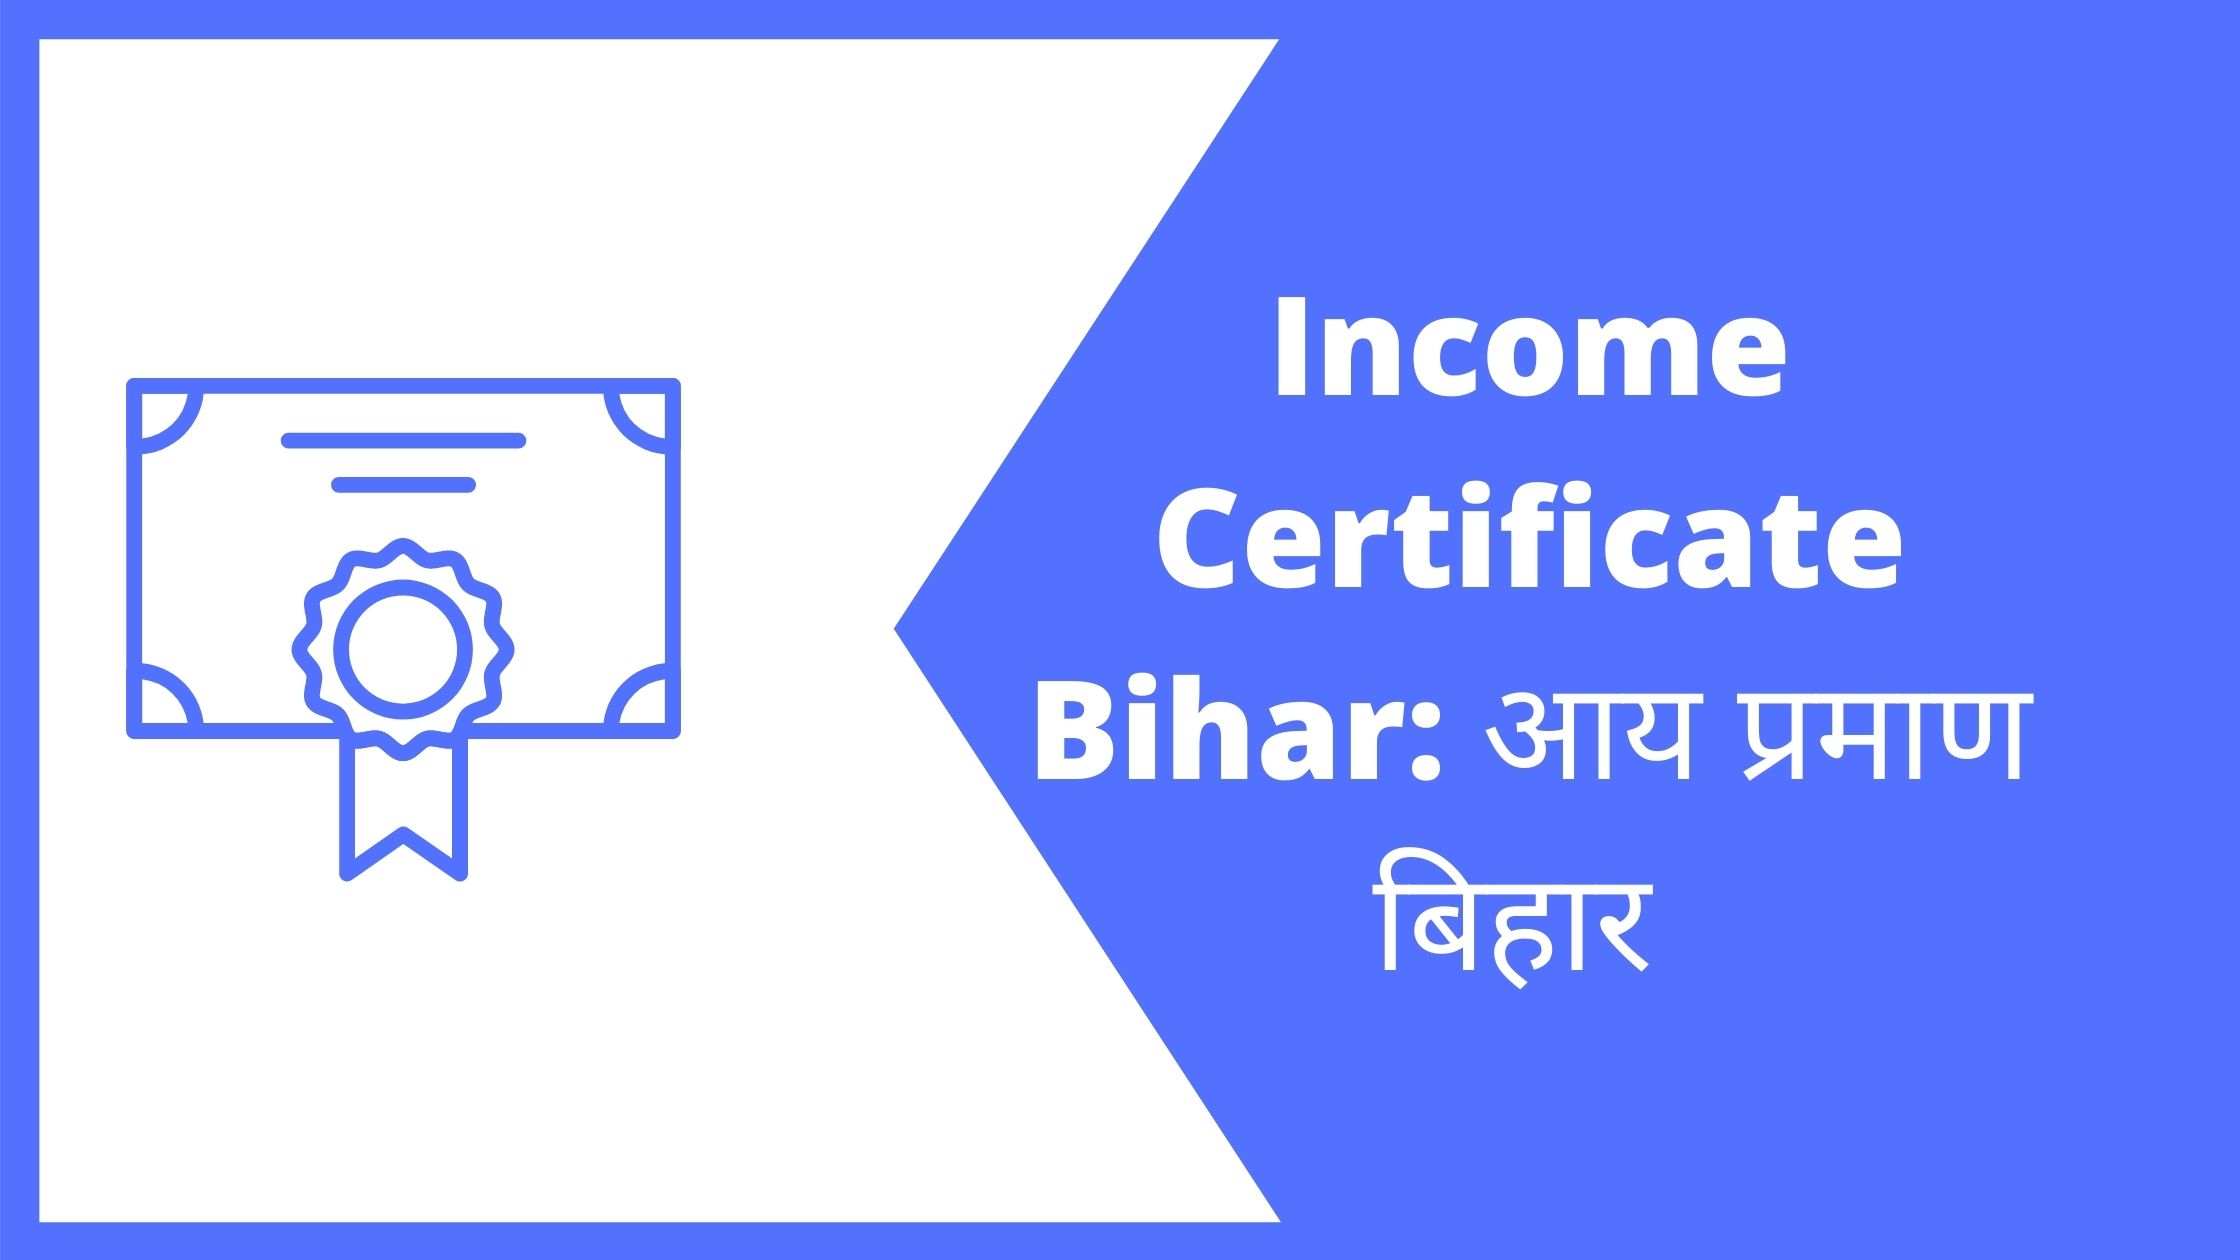 Income Certificate Bihar: आय प्रमाण पत्र बनाना हुआ आसान, जानिए पूरी प्रक्रिया।